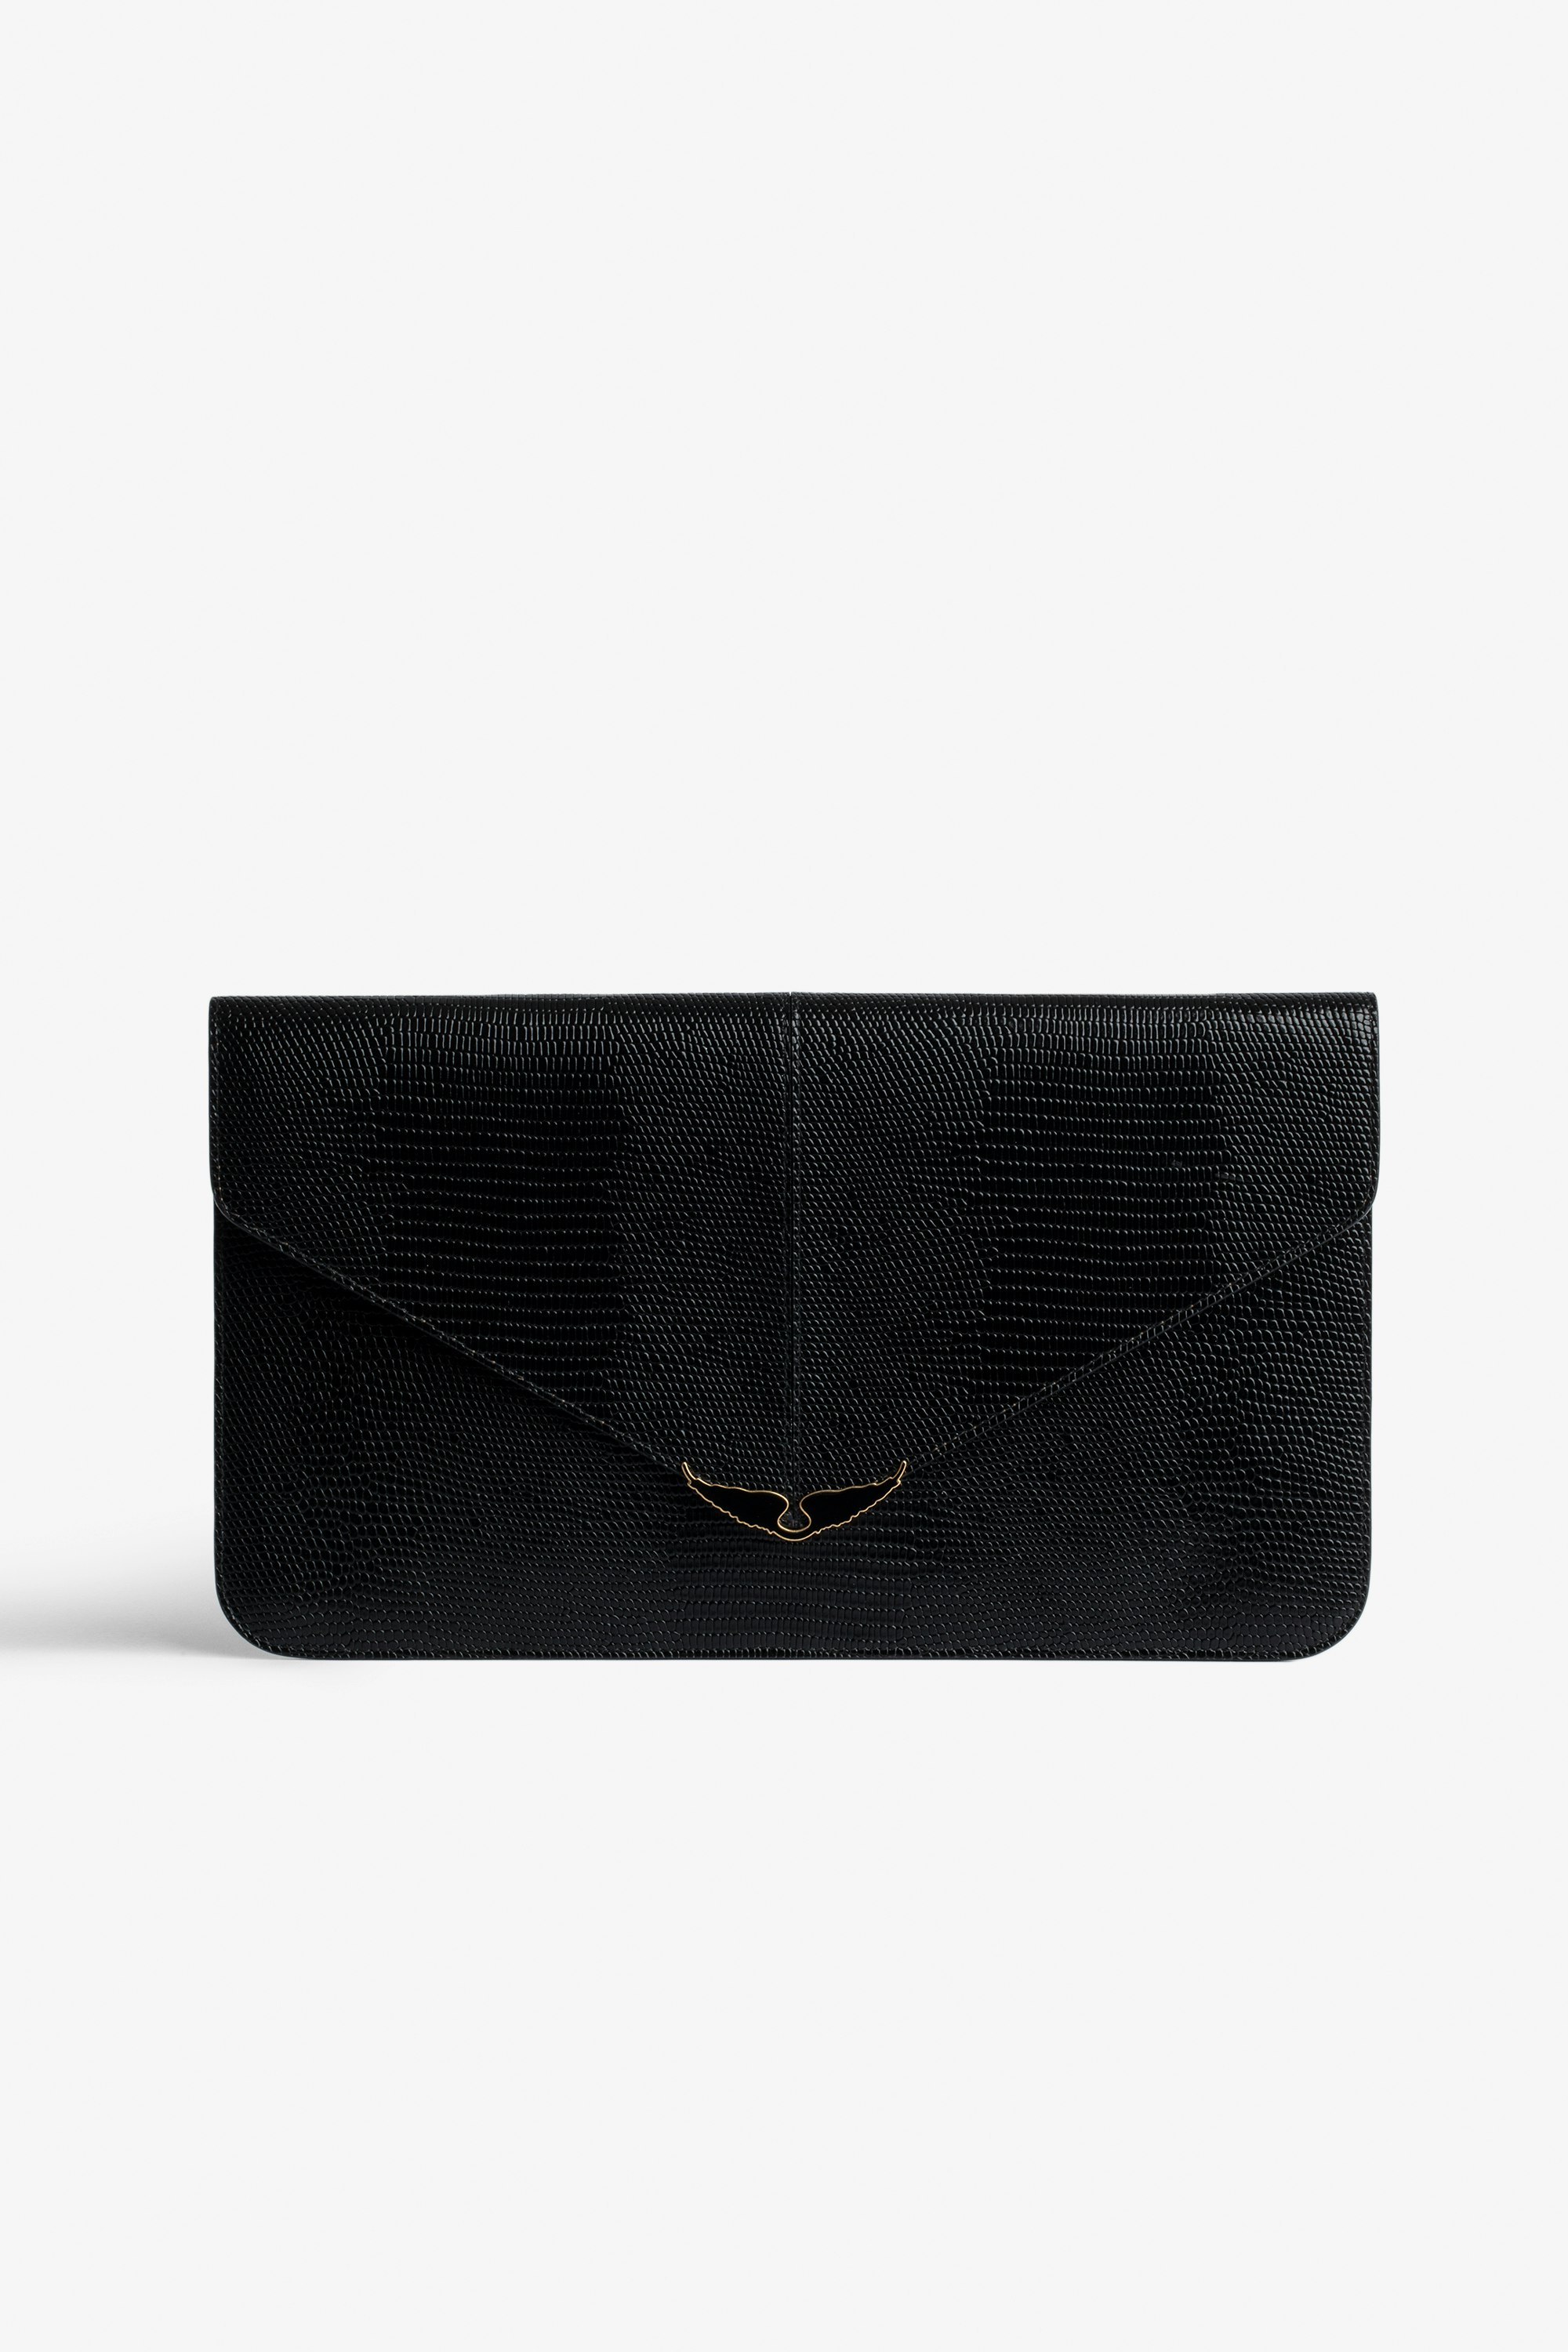 Clutch Borderline Enveloppe-Clutch für Damen aus schwarzem Glanzleder mit Leguanprägung und Innenseite aus khakifarbenem Veloursleder mit einem Verschluss mit schwarz lackierten Flügeln.